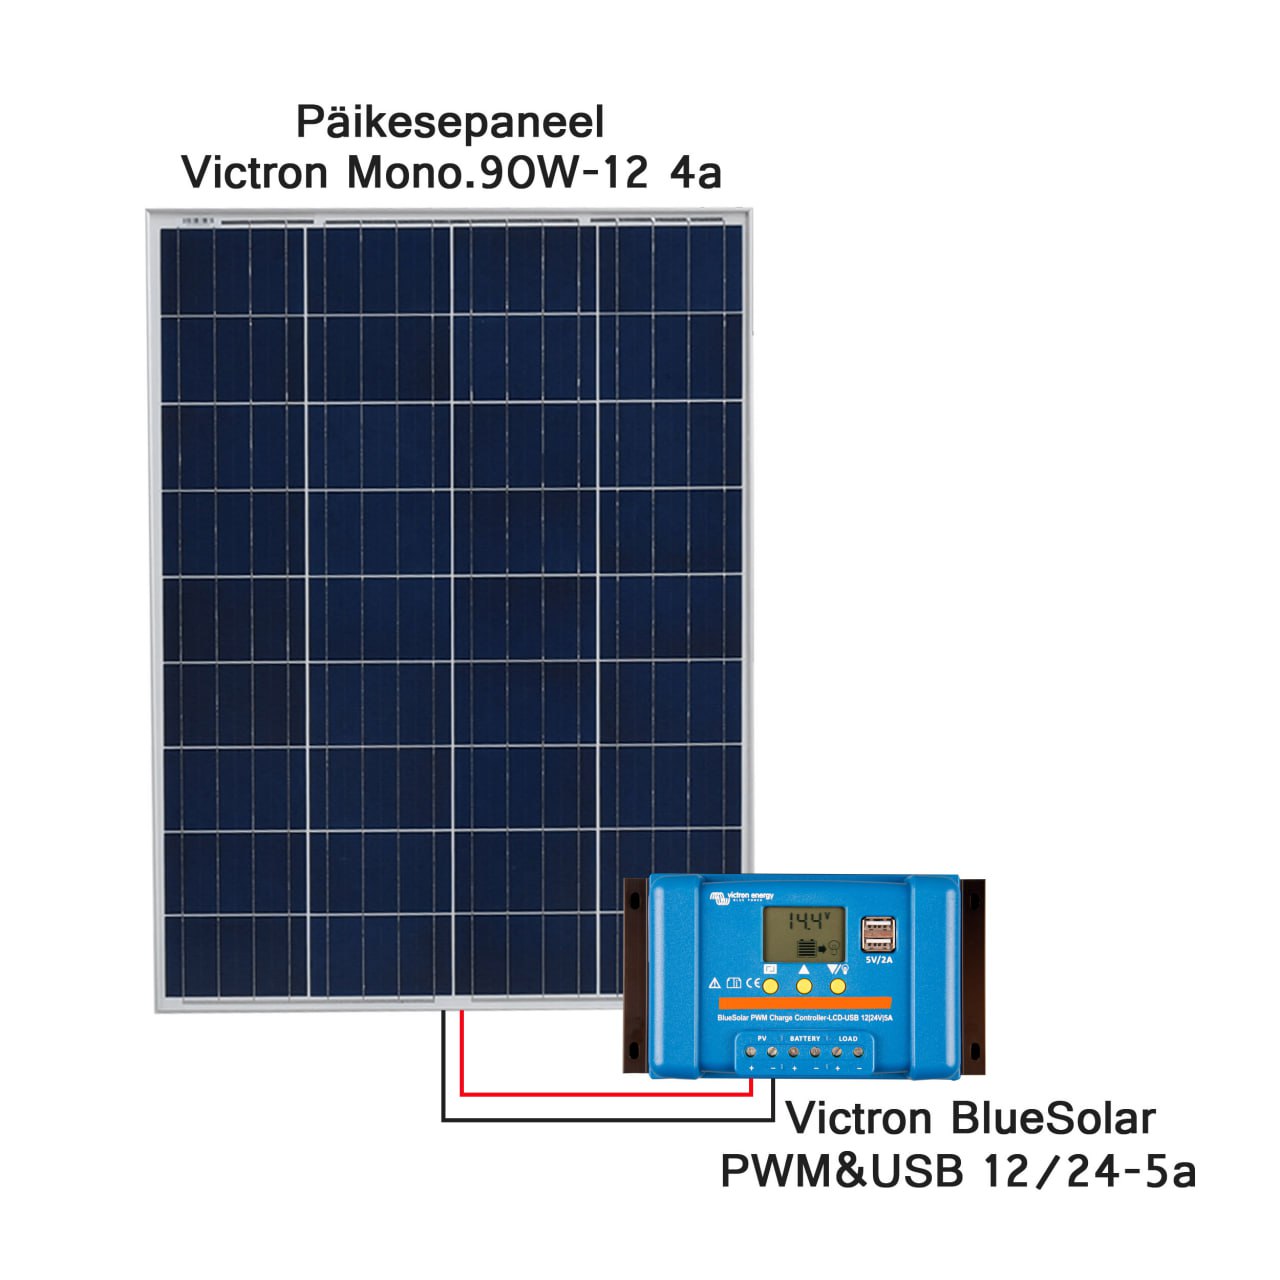 Päikesepaneeli pakett BASIC-S 90W-12V